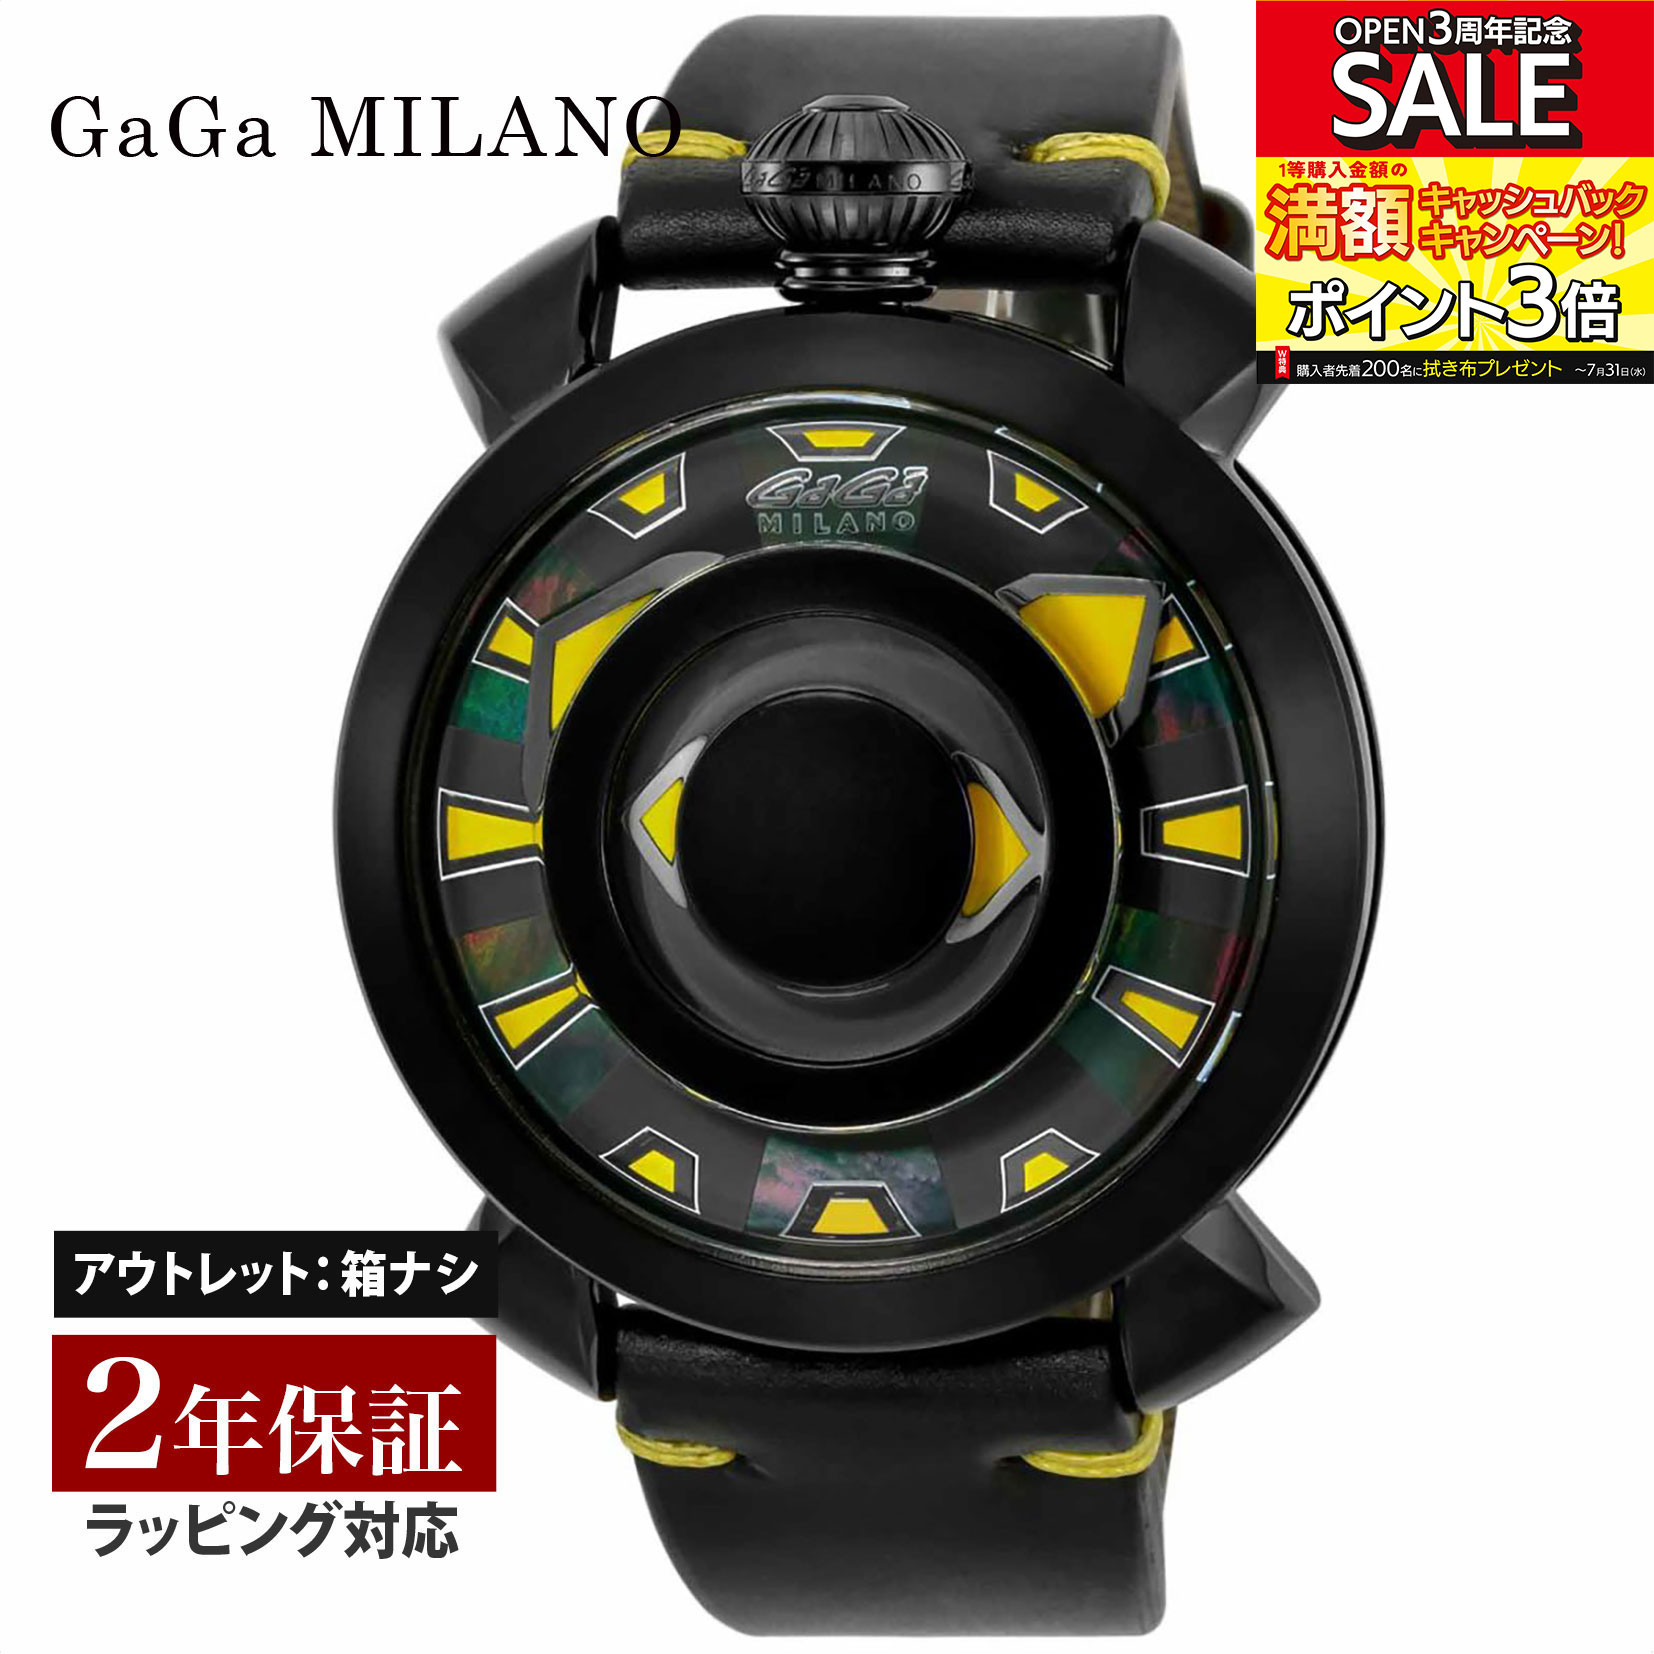 ガガ ミラノ 腕時計（メンズ） 【OUTLET】 ガガミラノ GaGaMILANO メンズ 時計 MANUALE 48mm 自動巻 マルチカラー 9092.02 時計 腕時計 高級腕時計 ブランド 【箱無し】